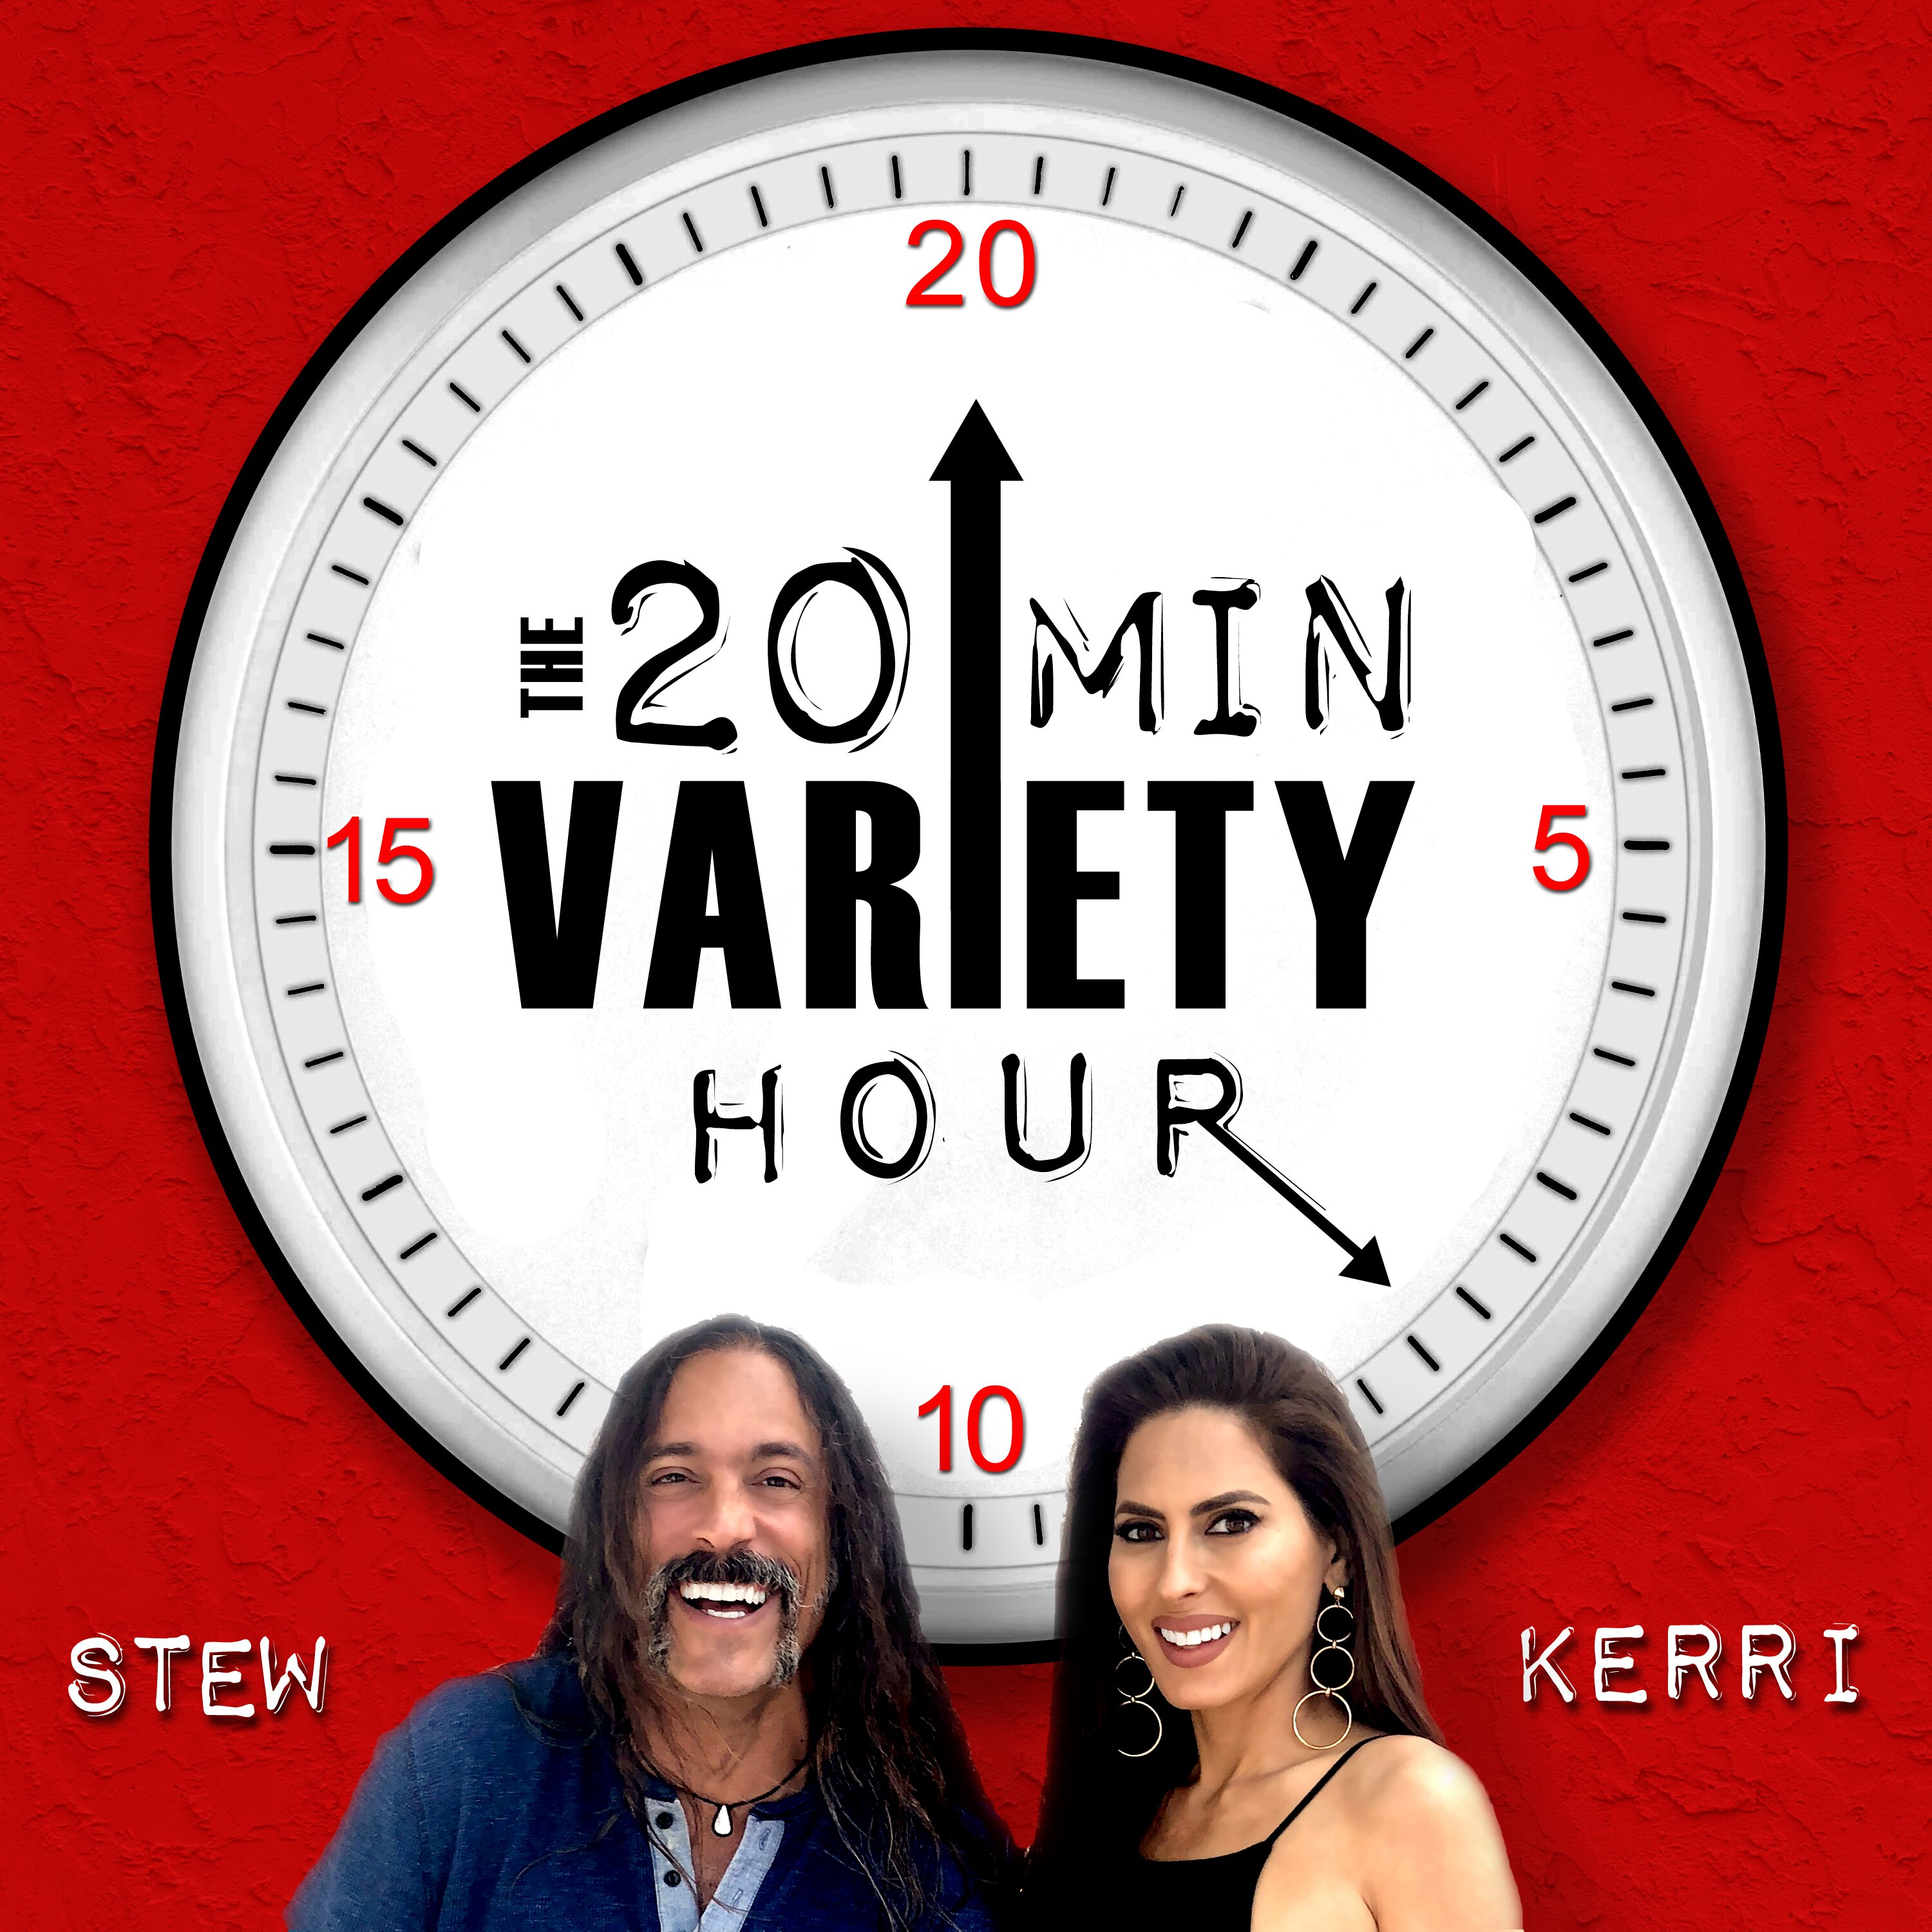 20 Min Variety Hour: Episode 8